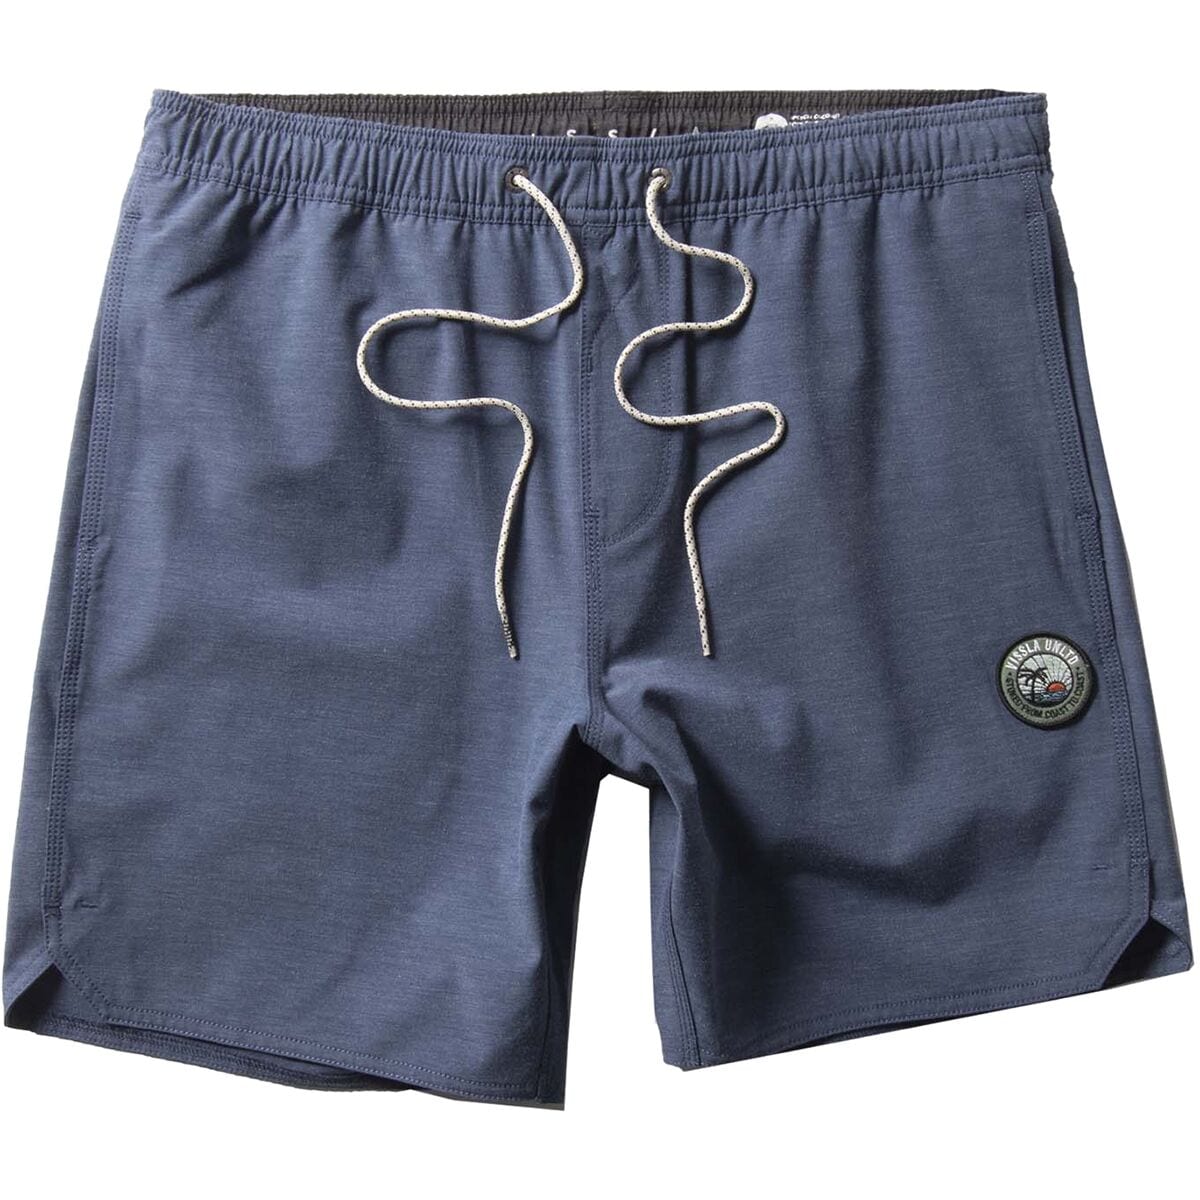 Vissla Solid Sets 17.5in Ecolastic Short - Men's - Clothing